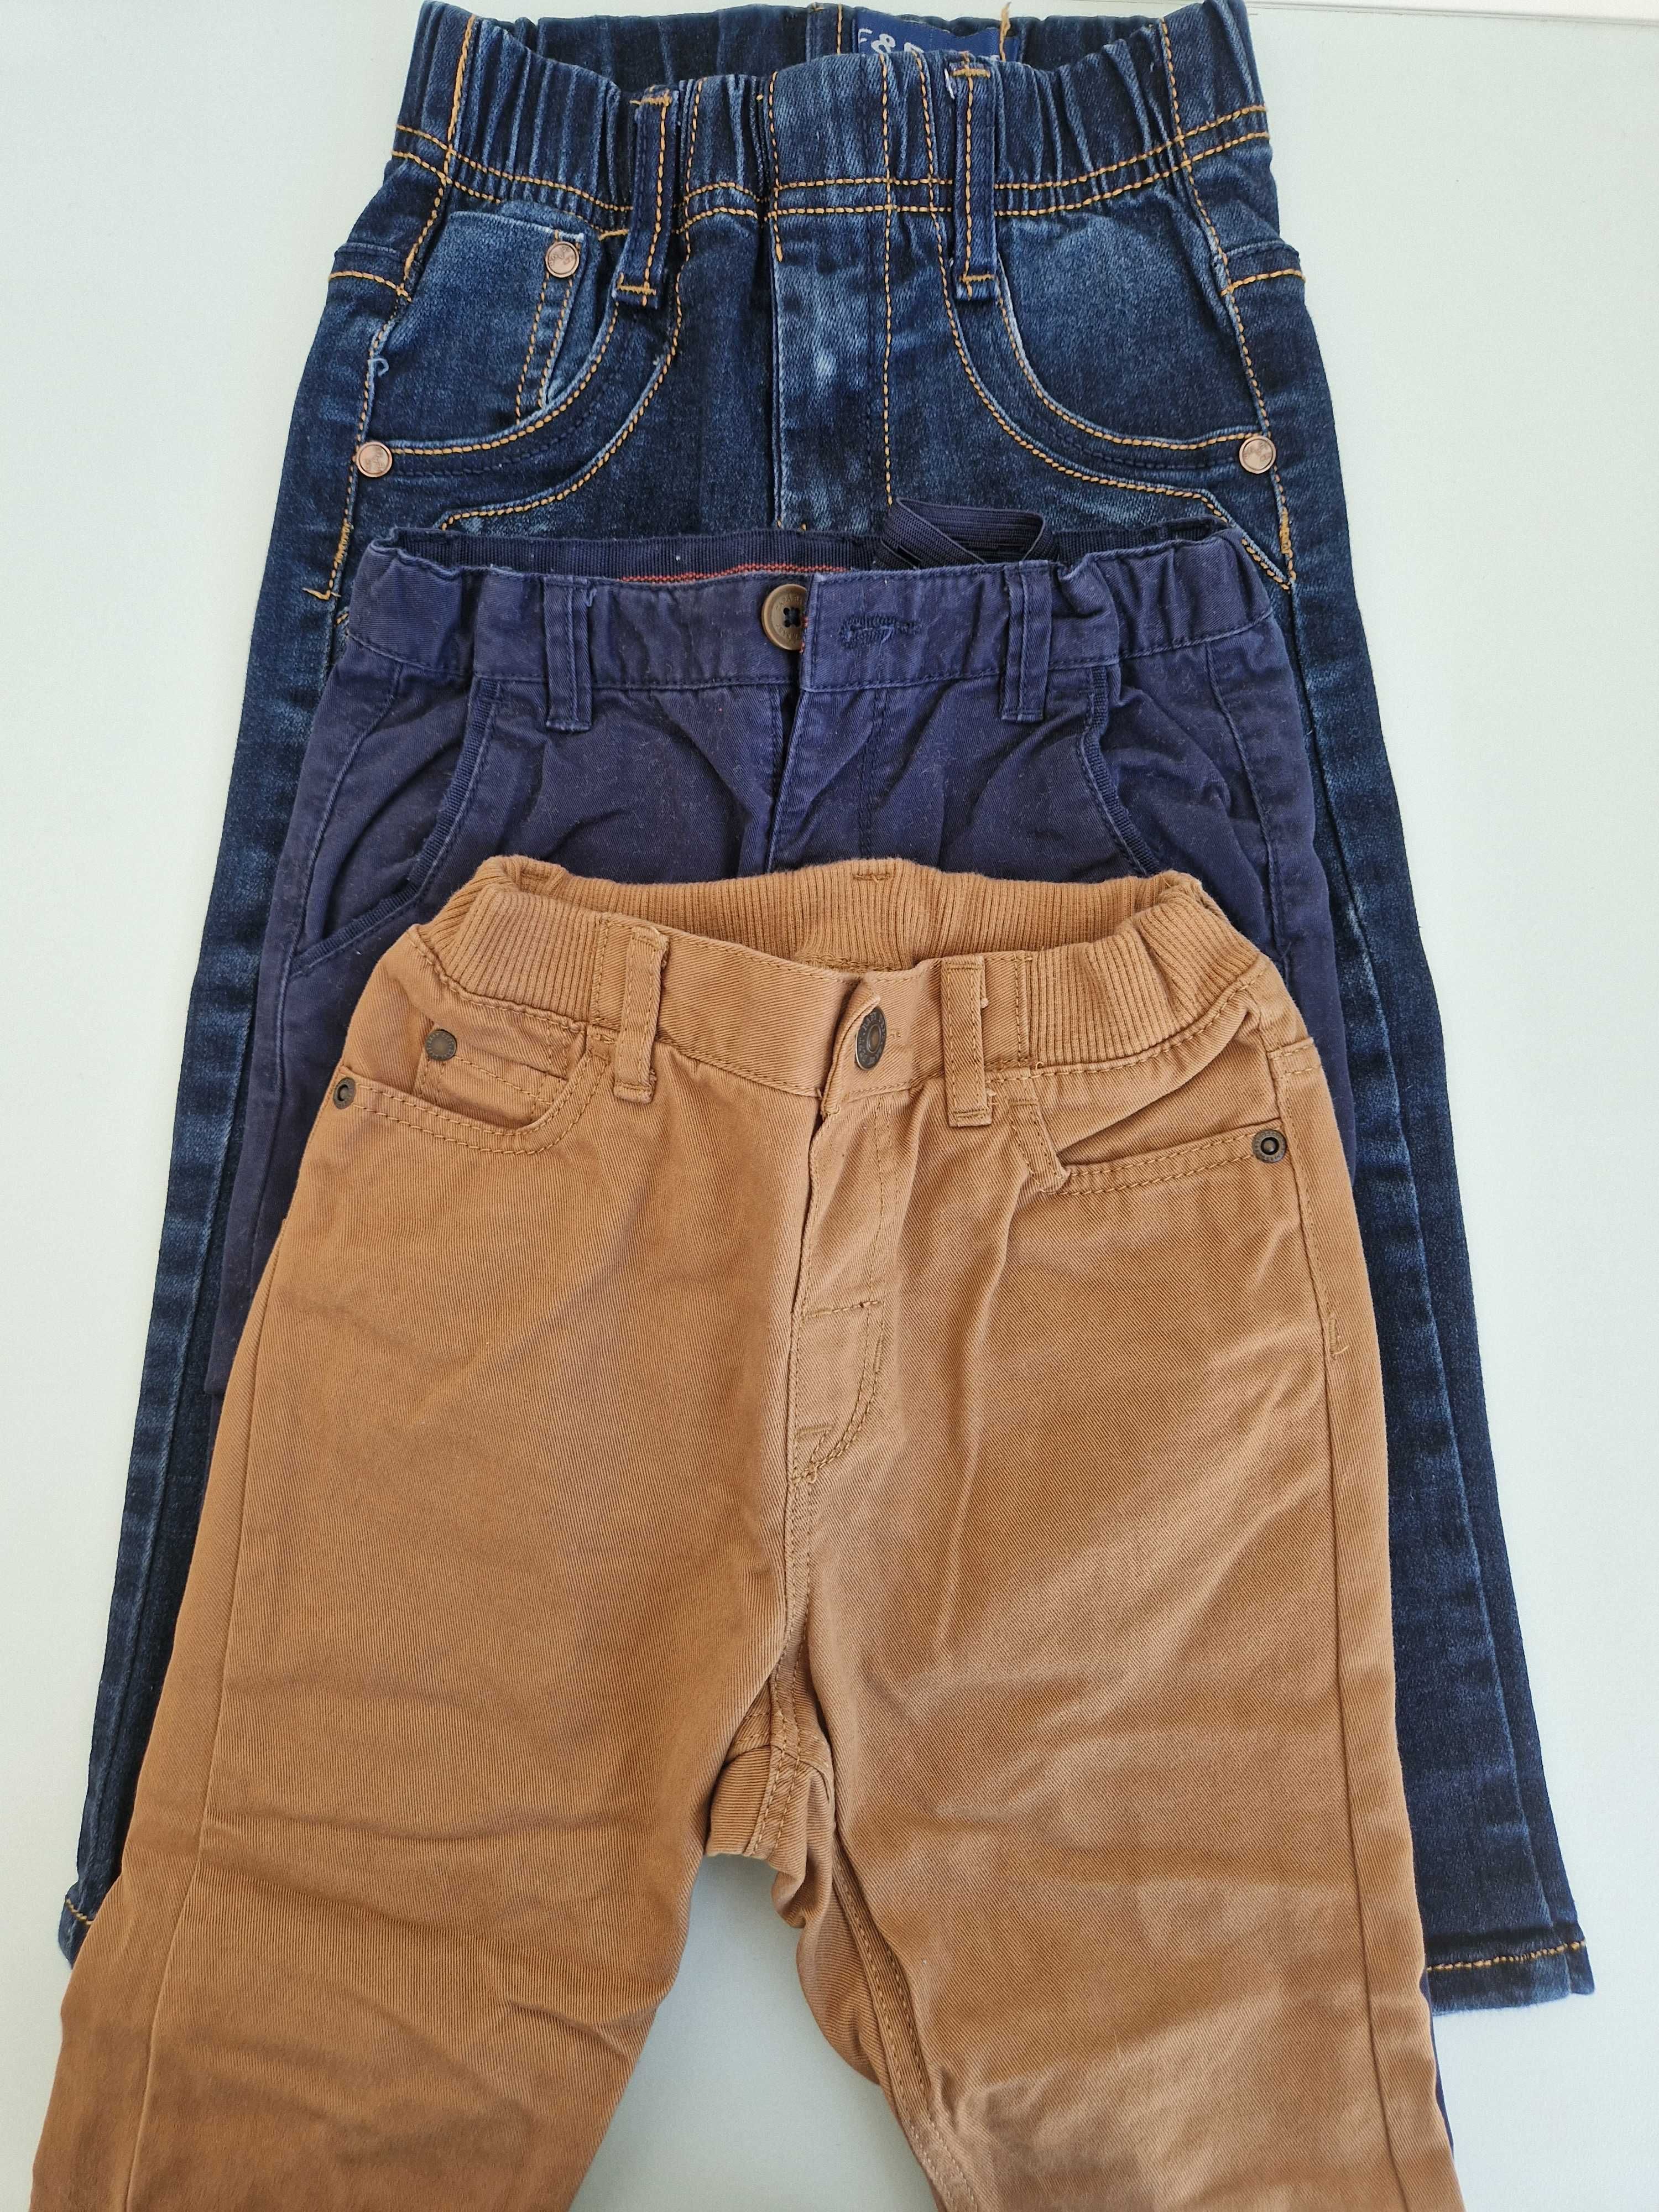 Pantaloni baieti marimea 86 (3 bucati) Zara, H&M